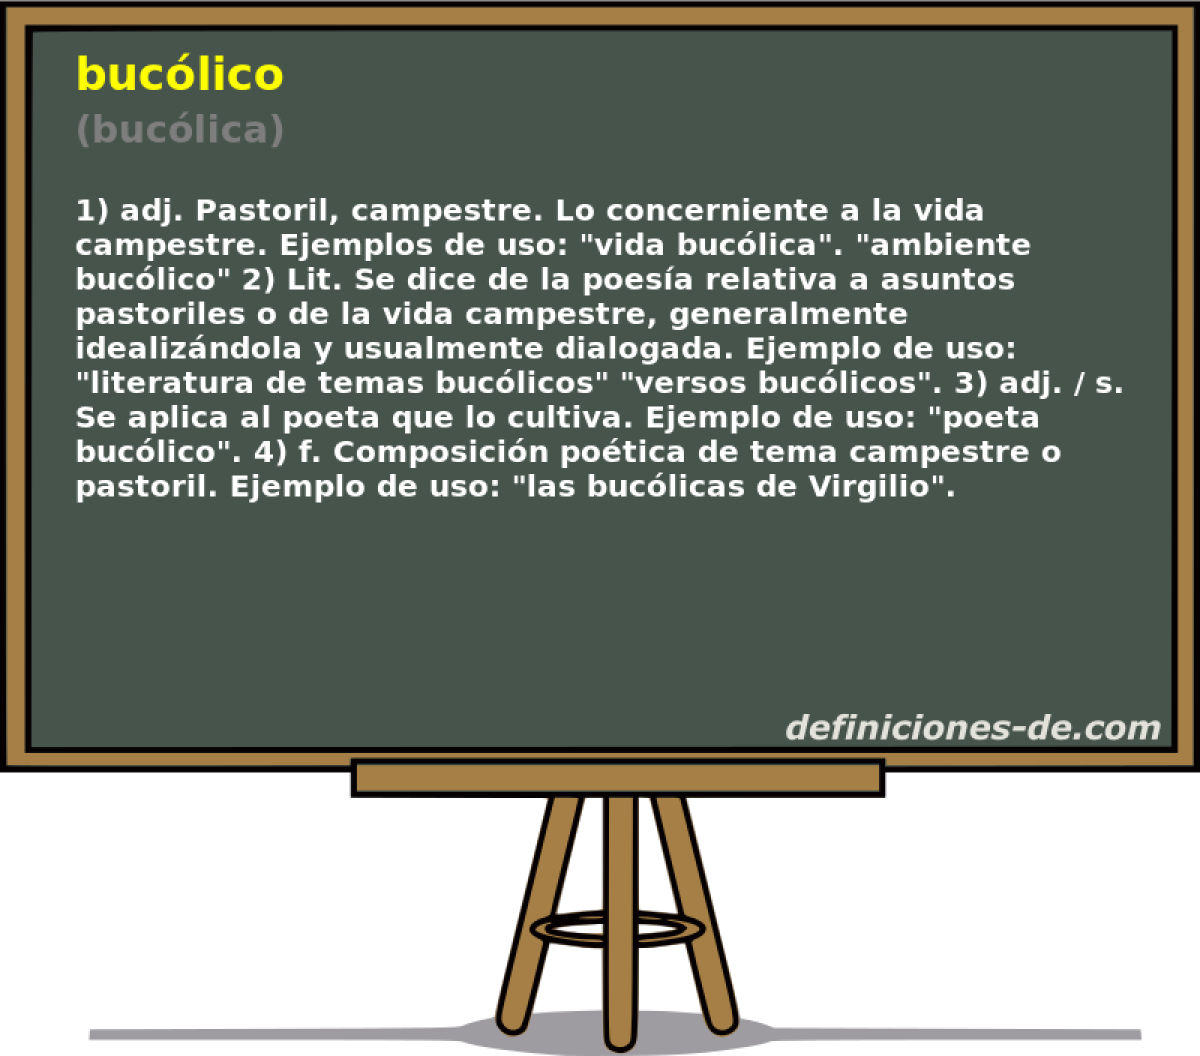 buclico (buclica)